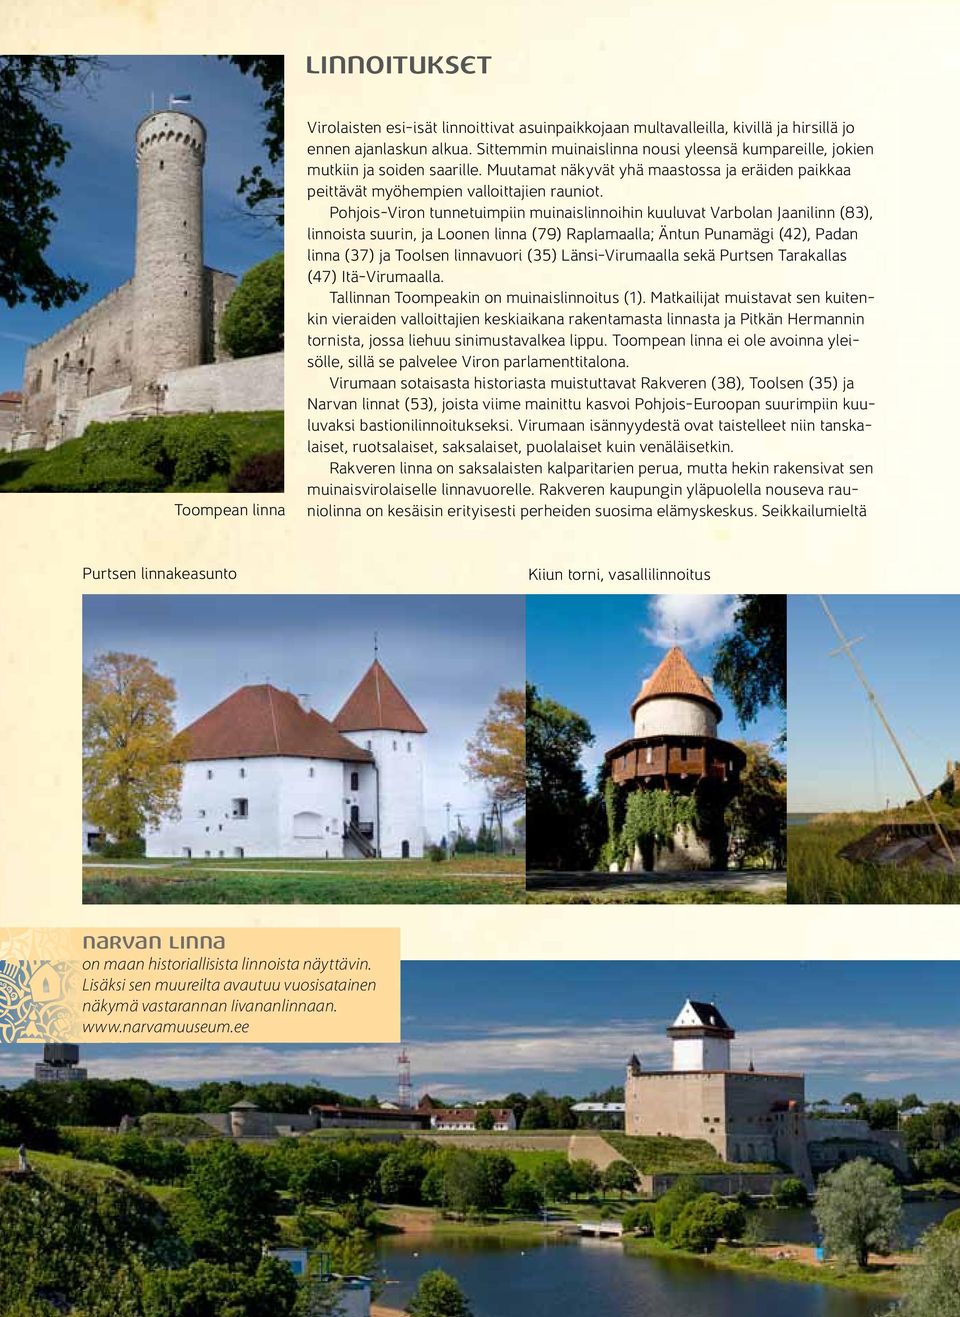 Pohjois-Viron tunnetuimpiin muinaislinnoihin kuuluvat Varbolan Jaanilinn (83), linnoista suurin, ja Loonen linna (79) Raplamaalla; Äntun Punamägi (42), Padan linna (37) ja Toolsen linnavuori (35)